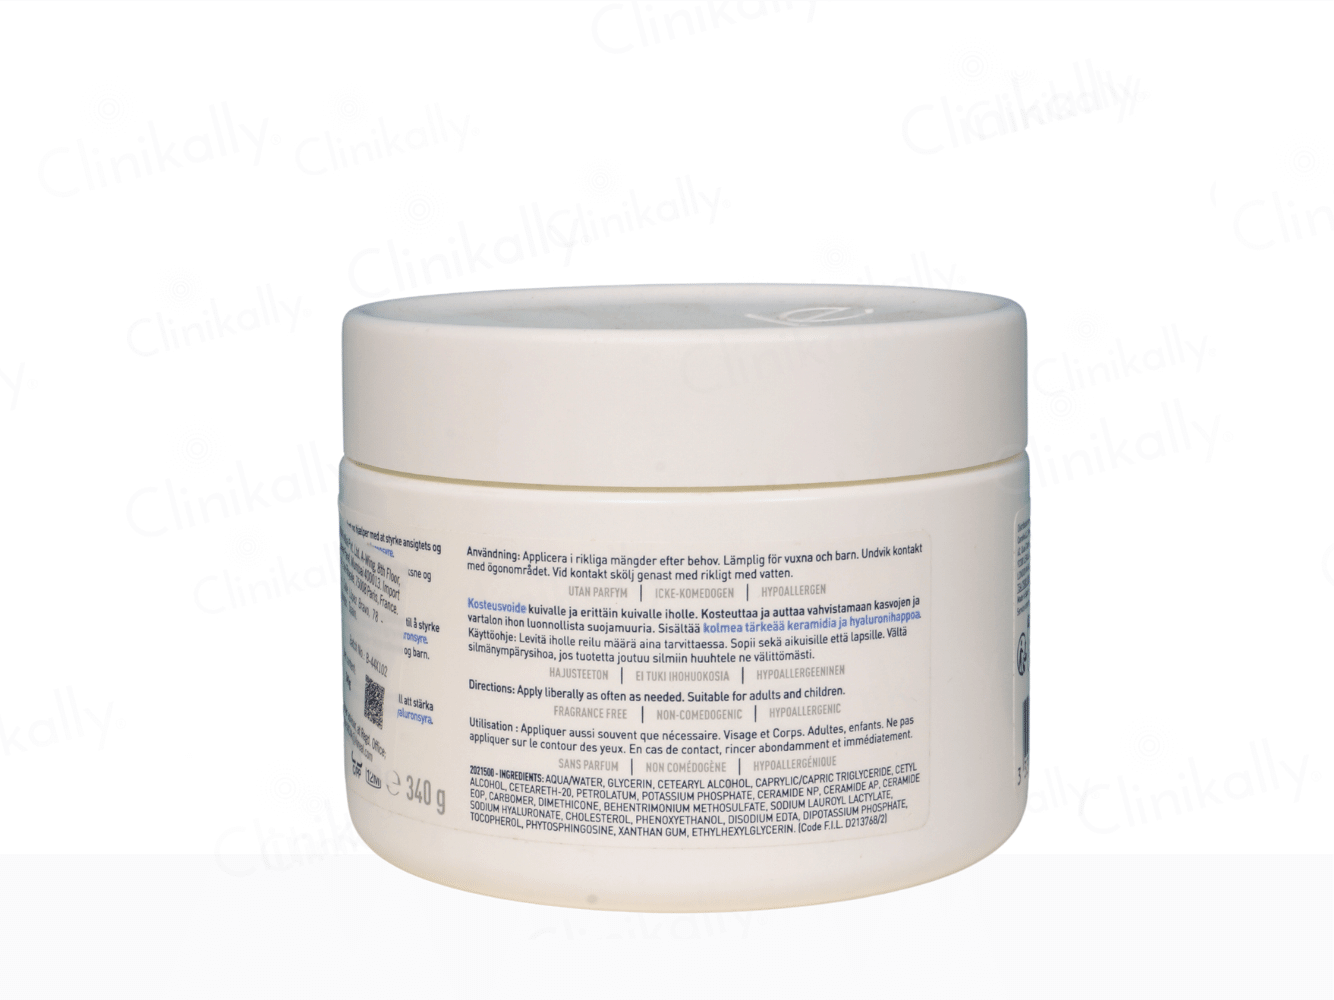 CeraVe Moisturising Cream for Dry to Very Dry Skin - Clinikally